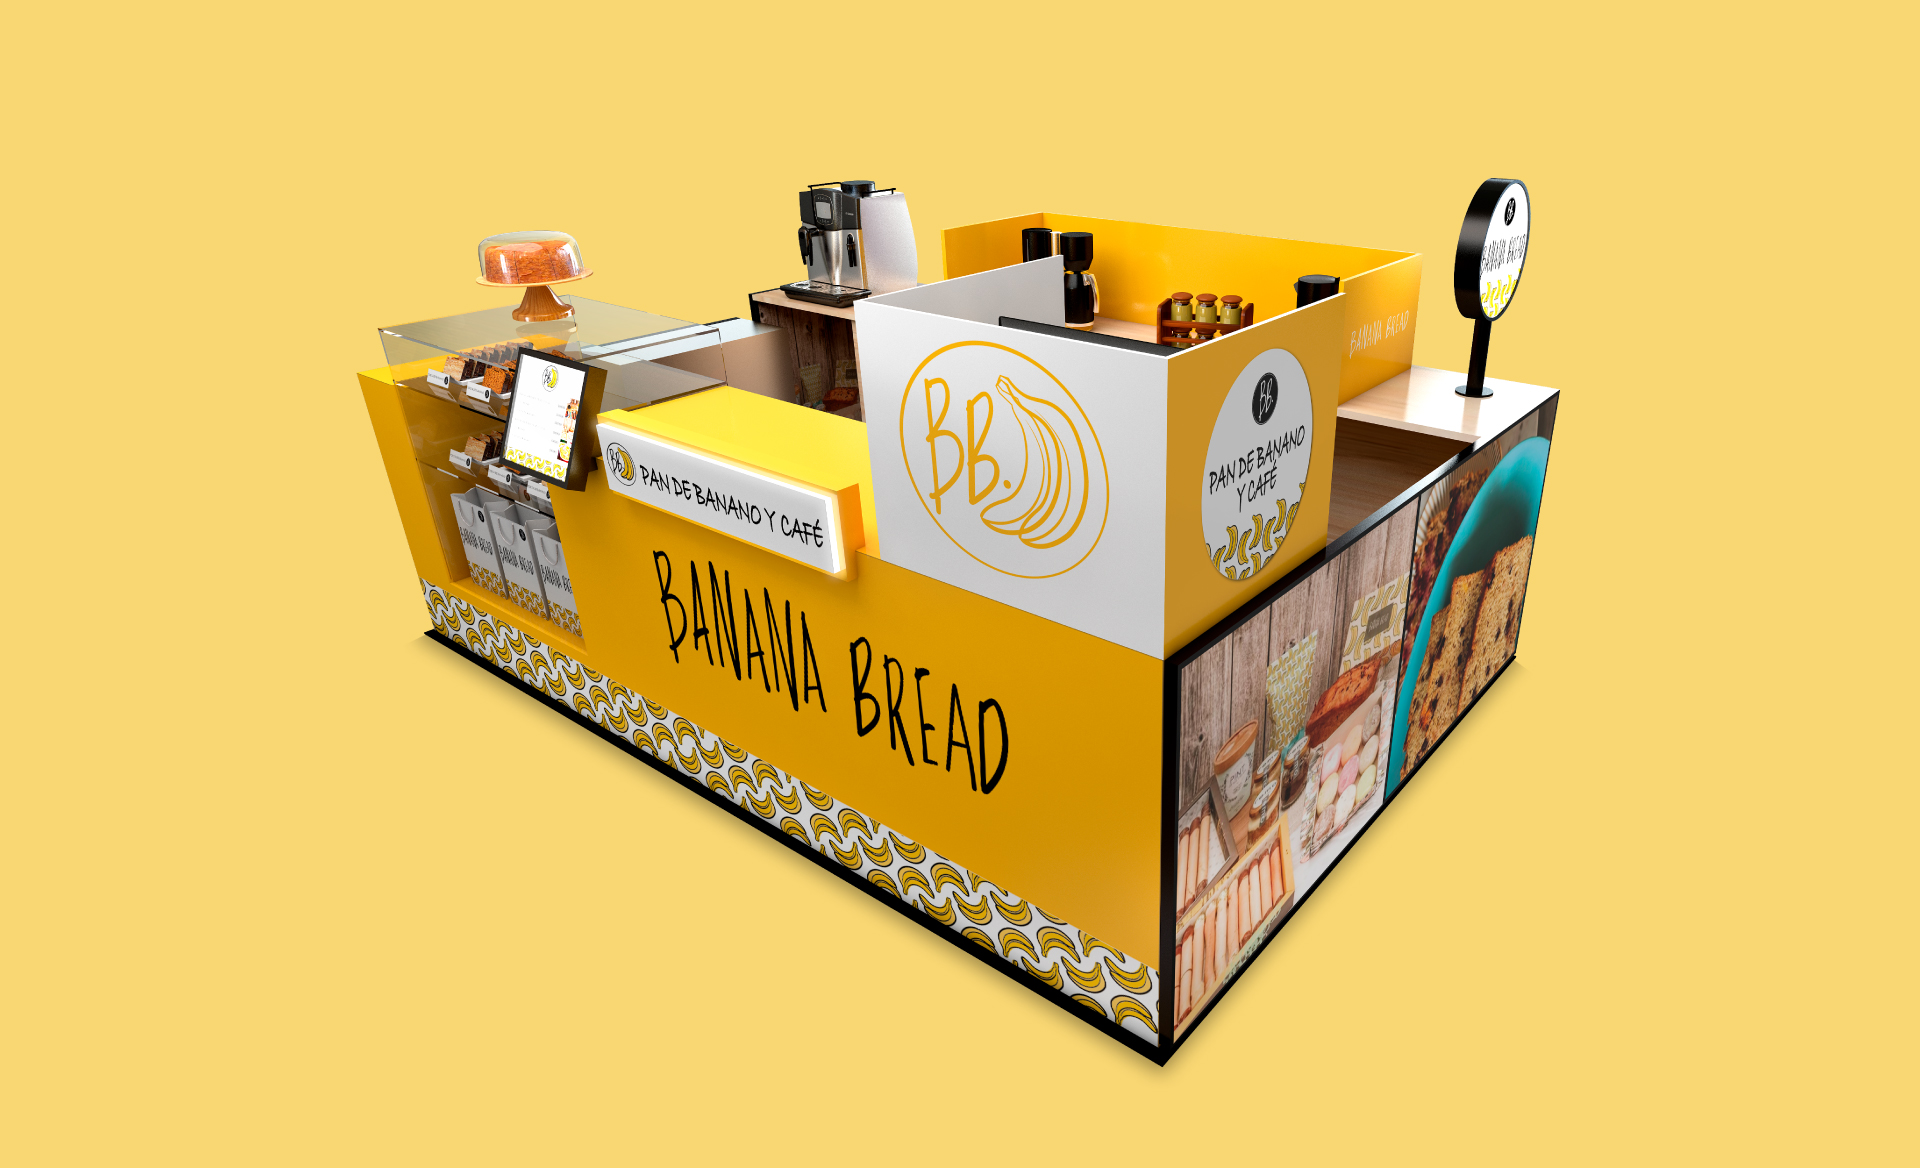 Banana bread, diseño de stand para tienda